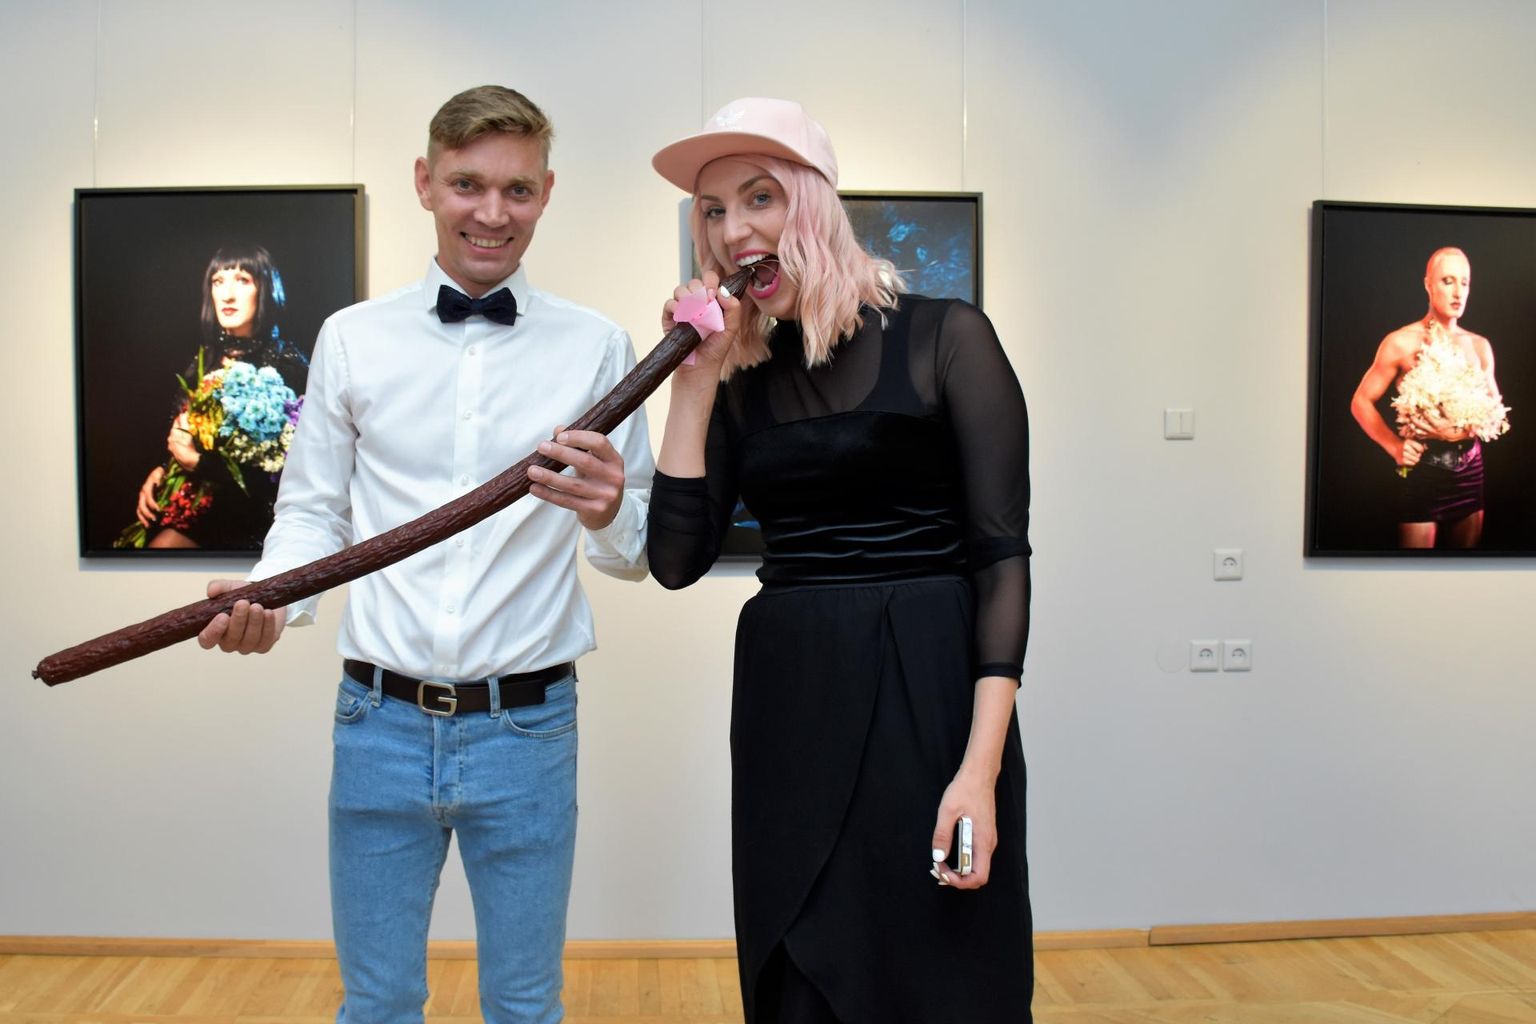 Tänavust Pärnu Kunstisuve kureerivad Avangard galerii eestvedajad Marian Kivila ja Jan Leo Grau pakuvad alternatiivseid vaatenurki mehe ja naise teemale.